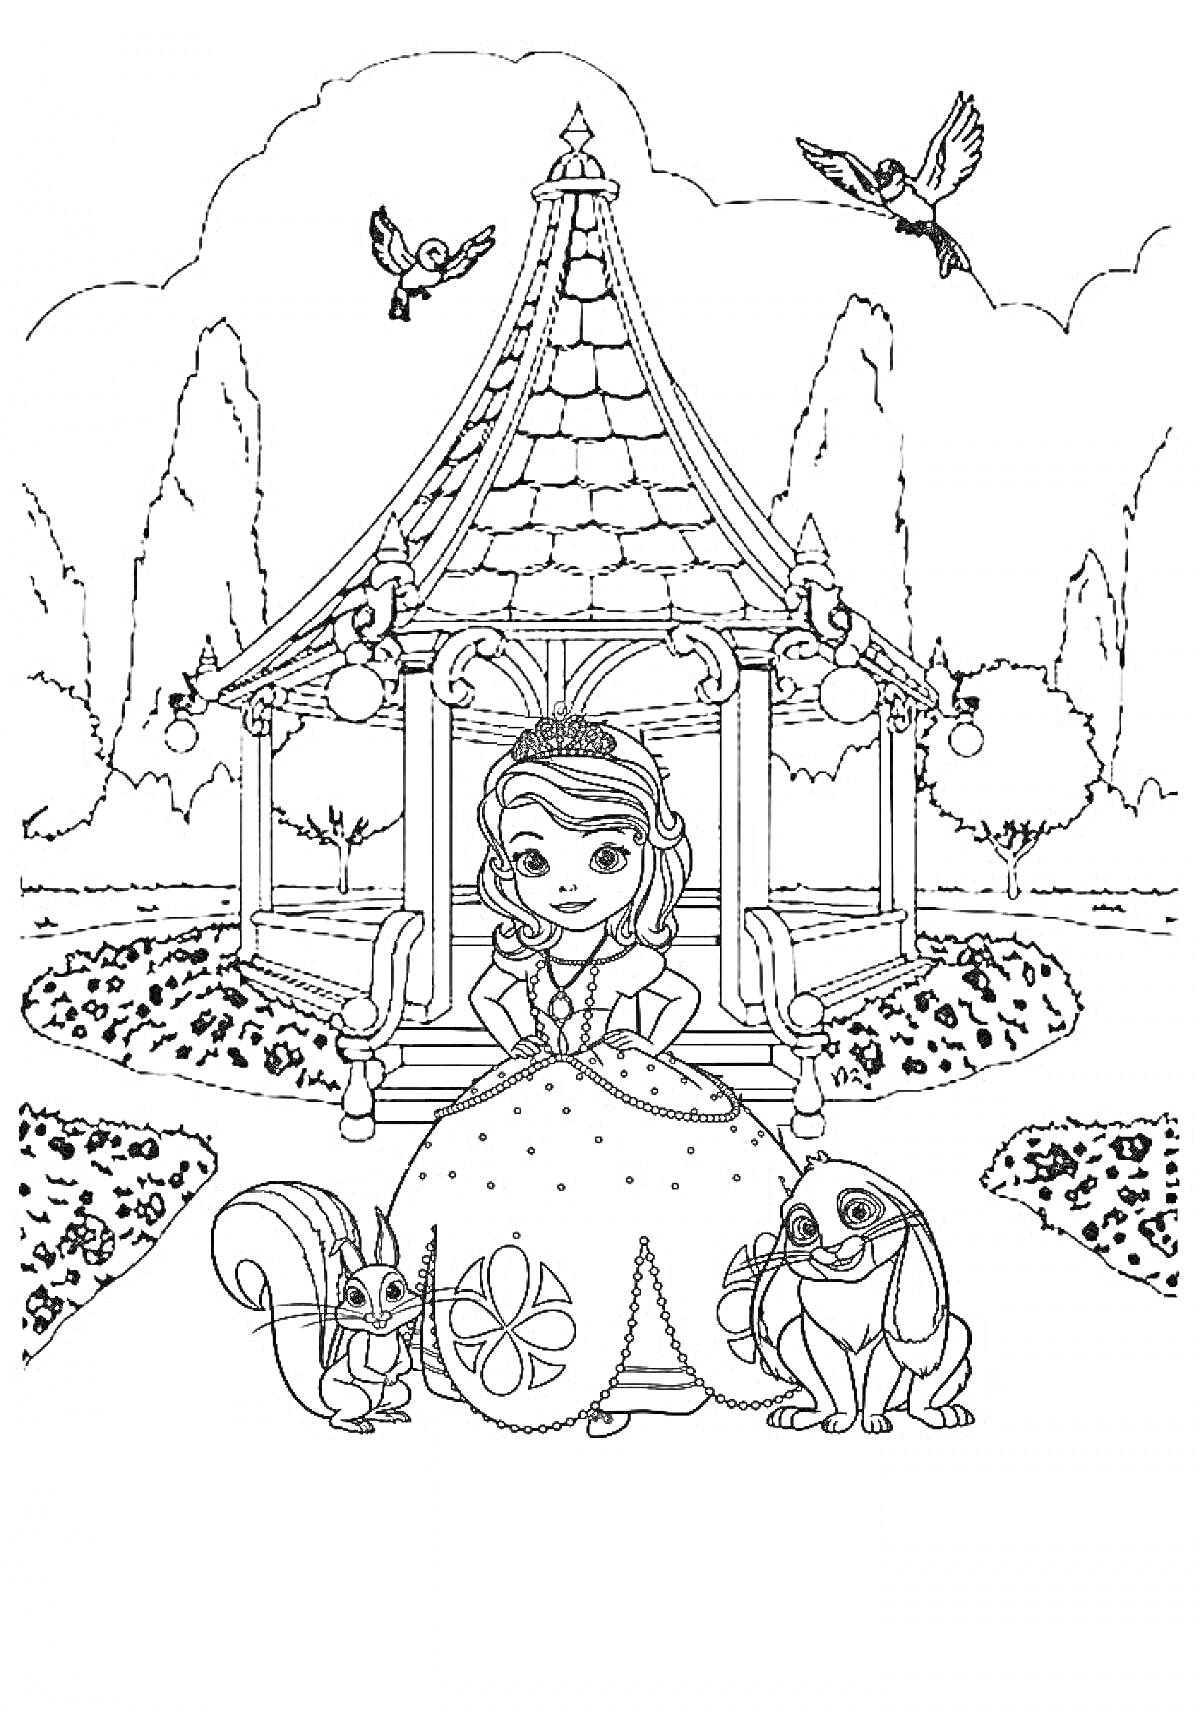 Раскраска Принцесса с животными на фоне беседки и деревьев, двое птиц в полете